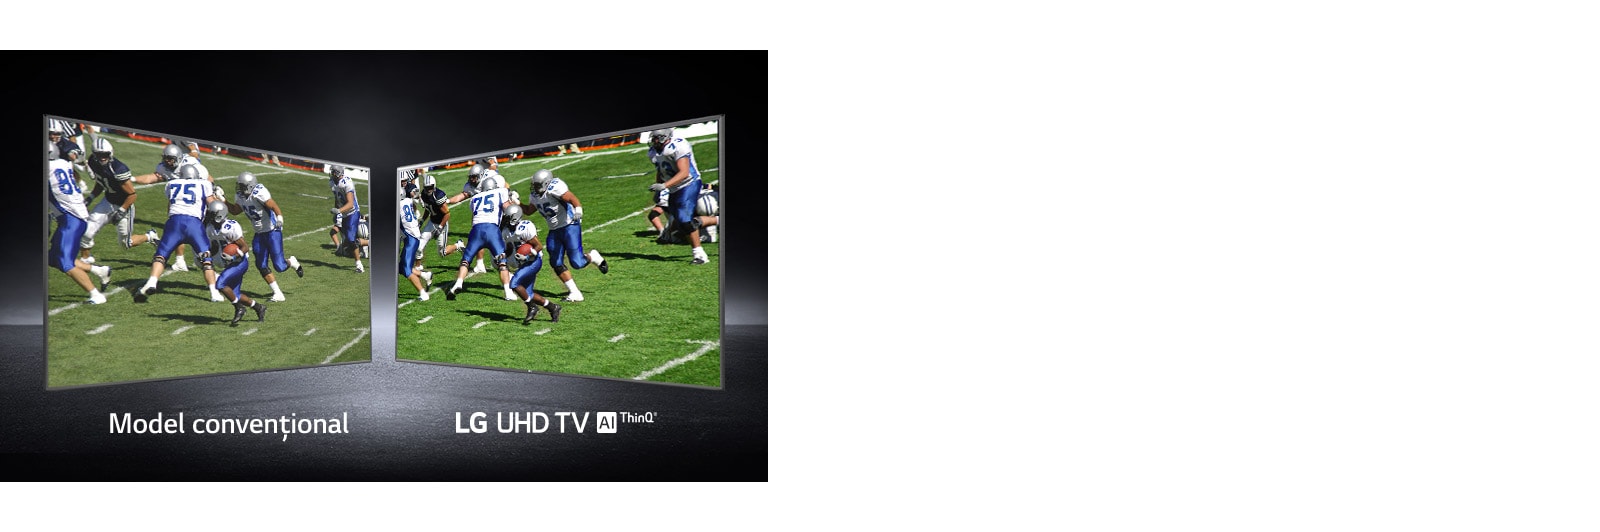 O imagine cu jucătorii care joacă pe un teren de fotbal prezentată în două vizualizări. Una prezentată pe un ecran convențional și una pe un televizor UHD.